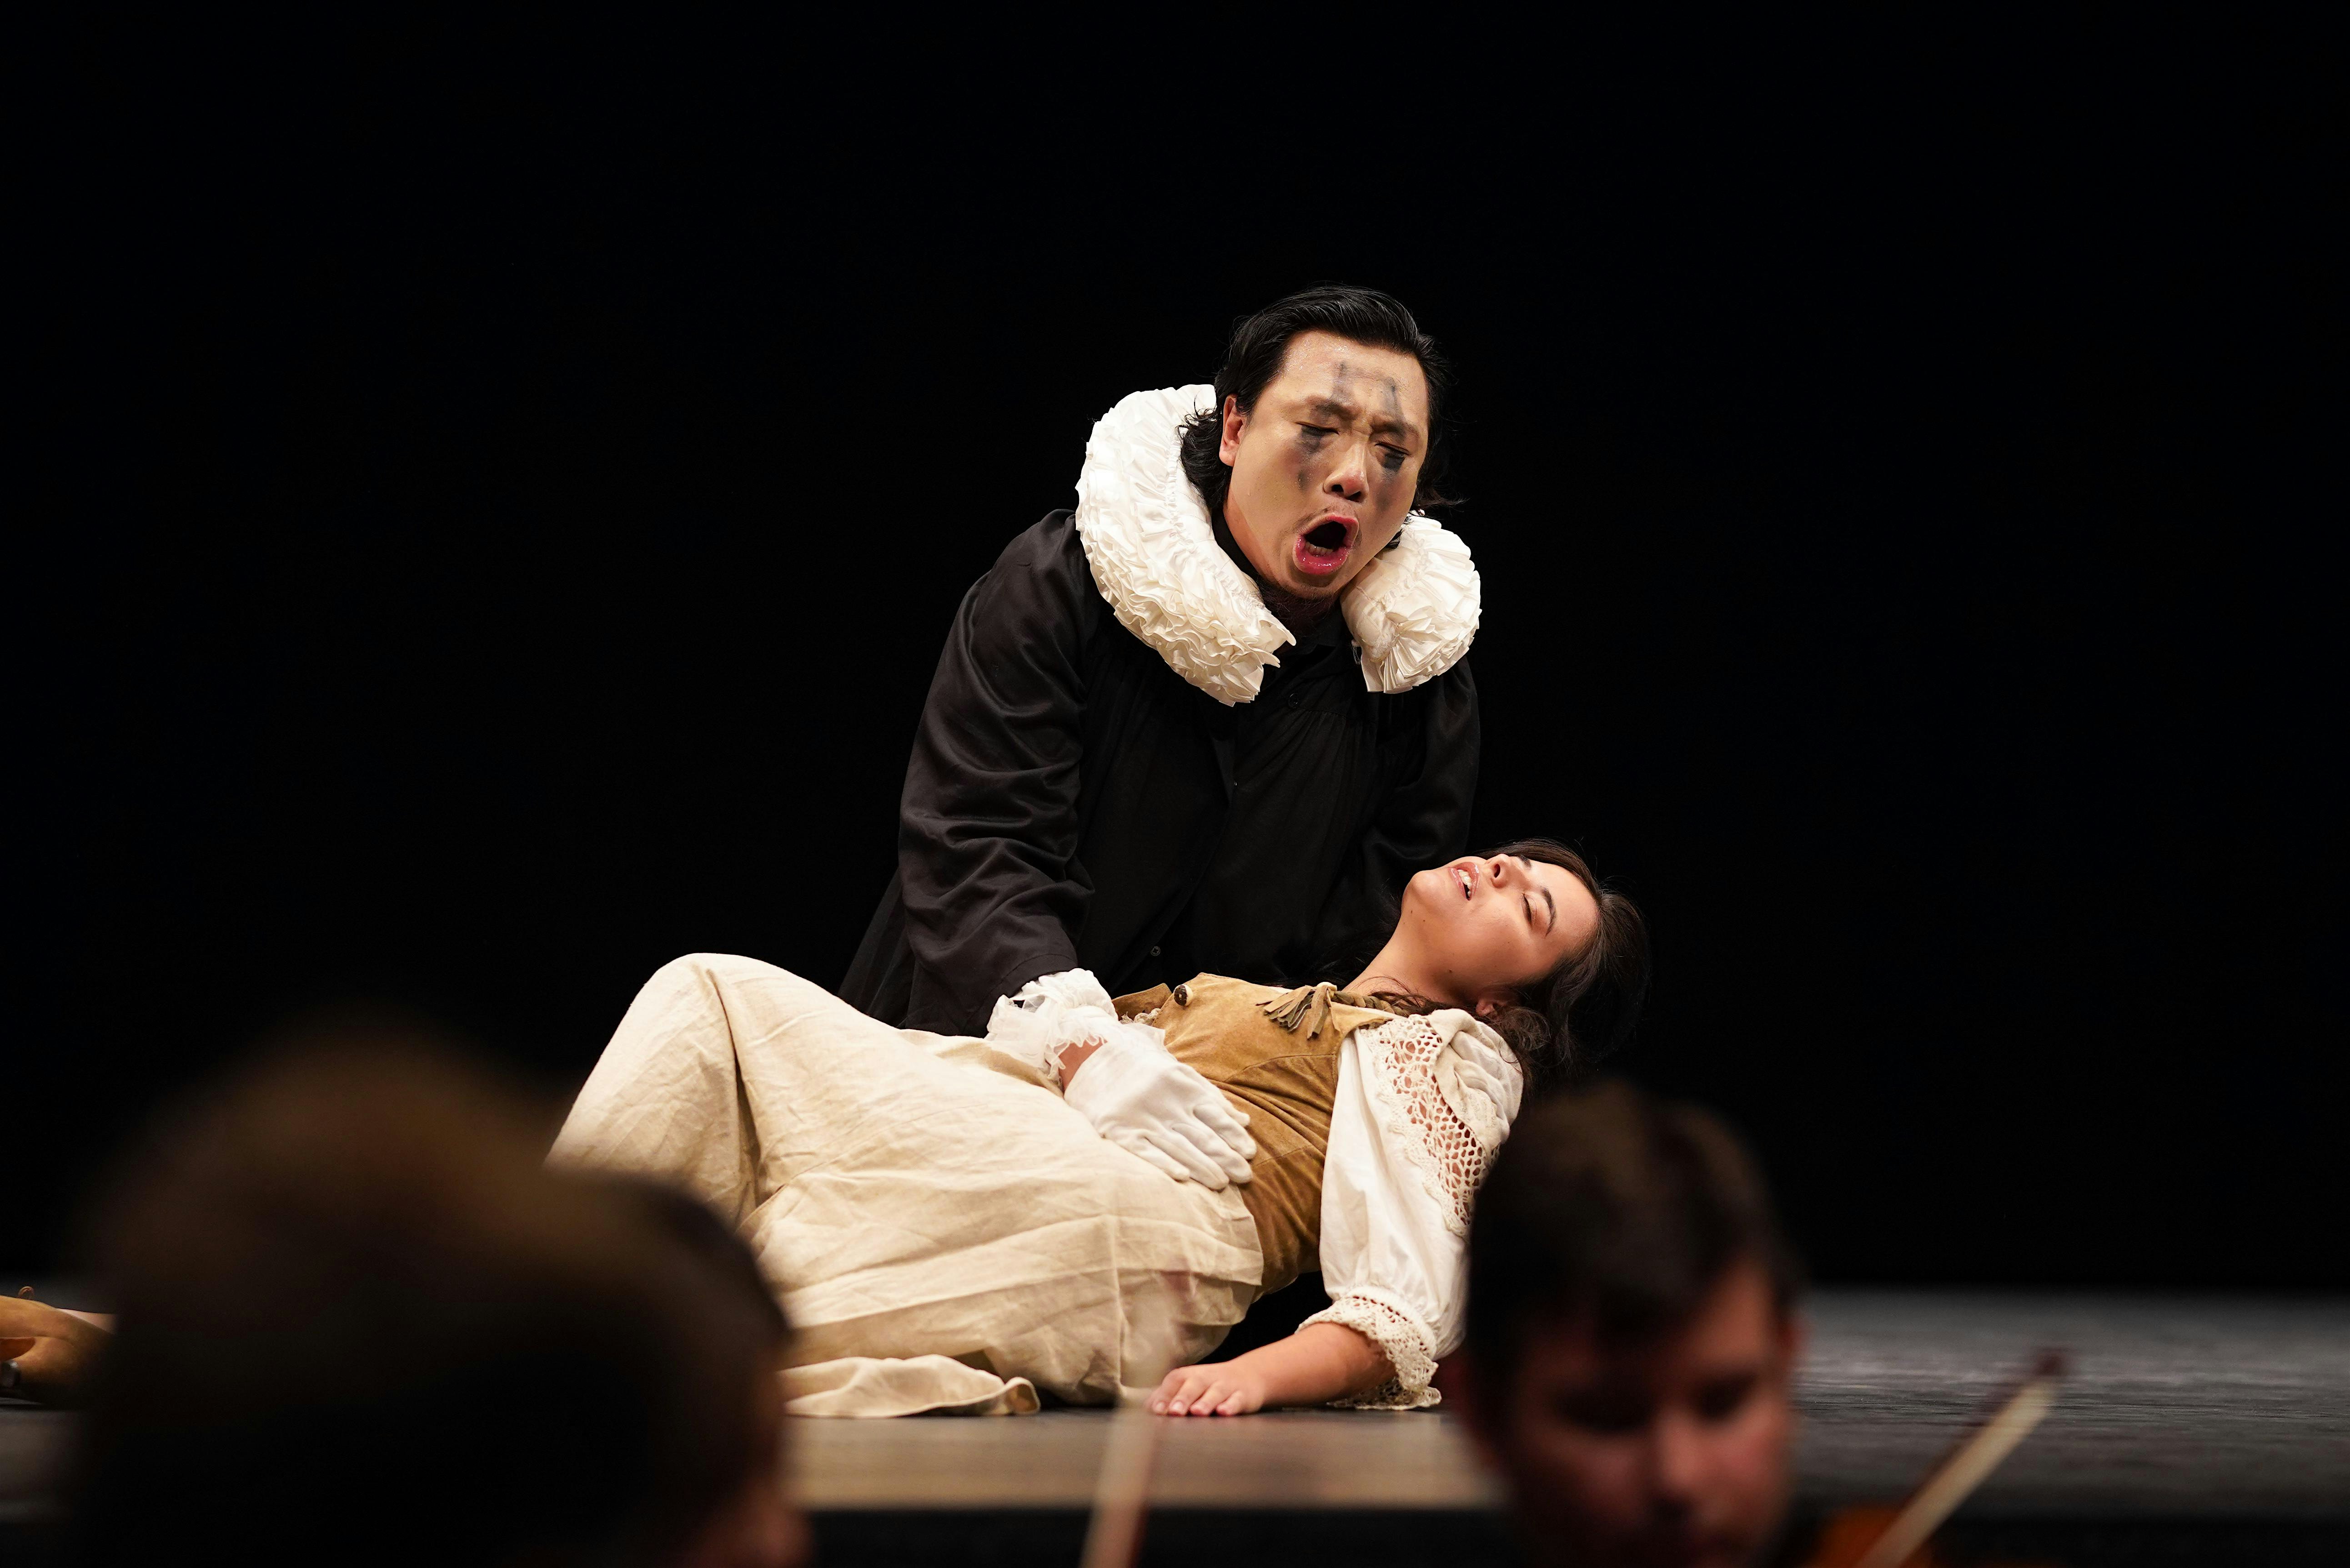 La Traviata & Rigoletto Highlights